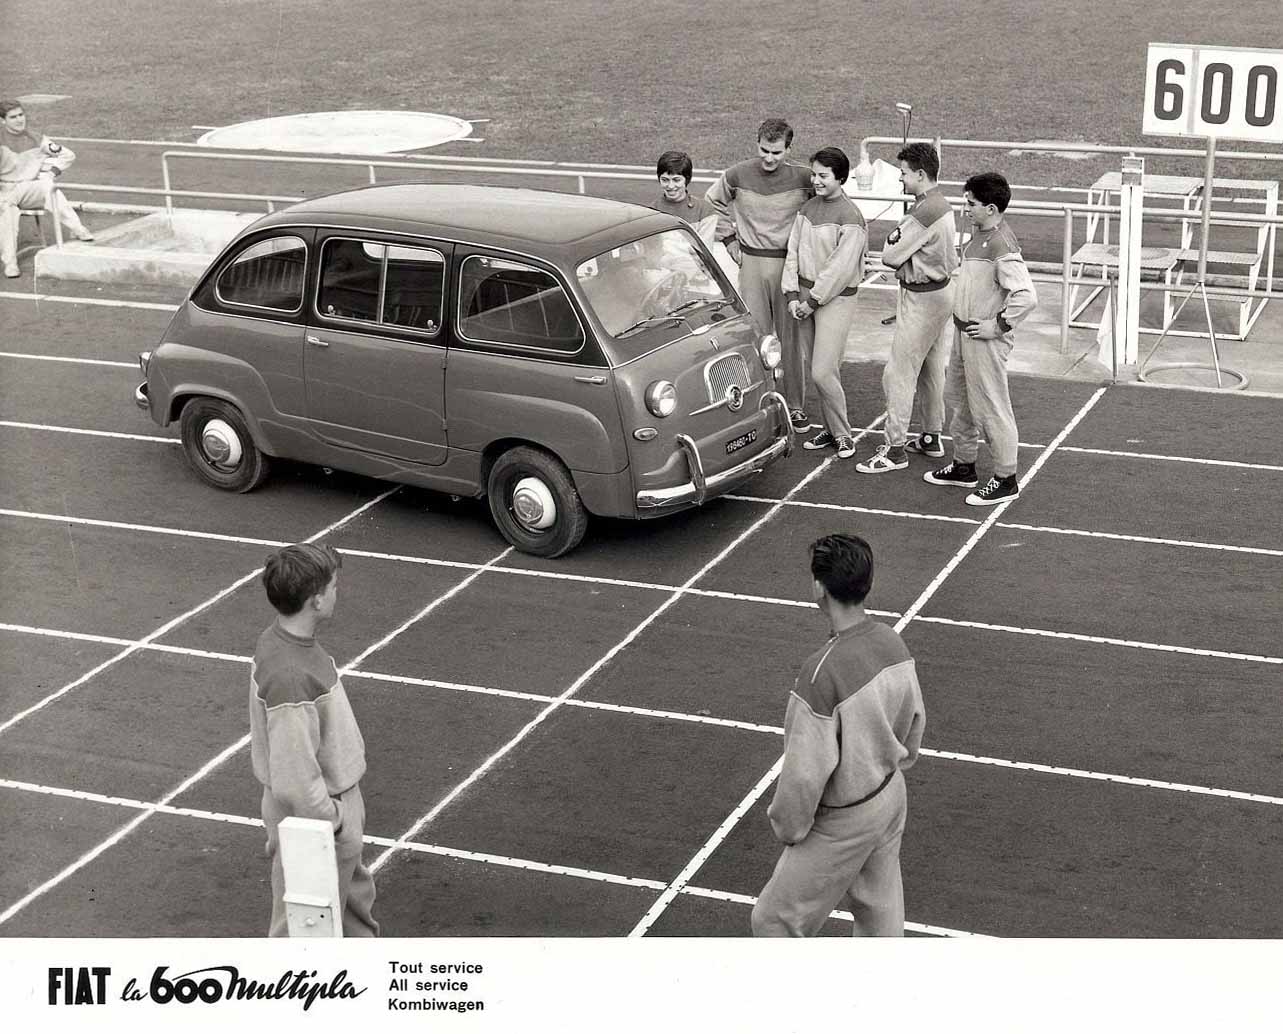 Squadra di atletica intenta ad ammirare una Fiat 600 Multipla